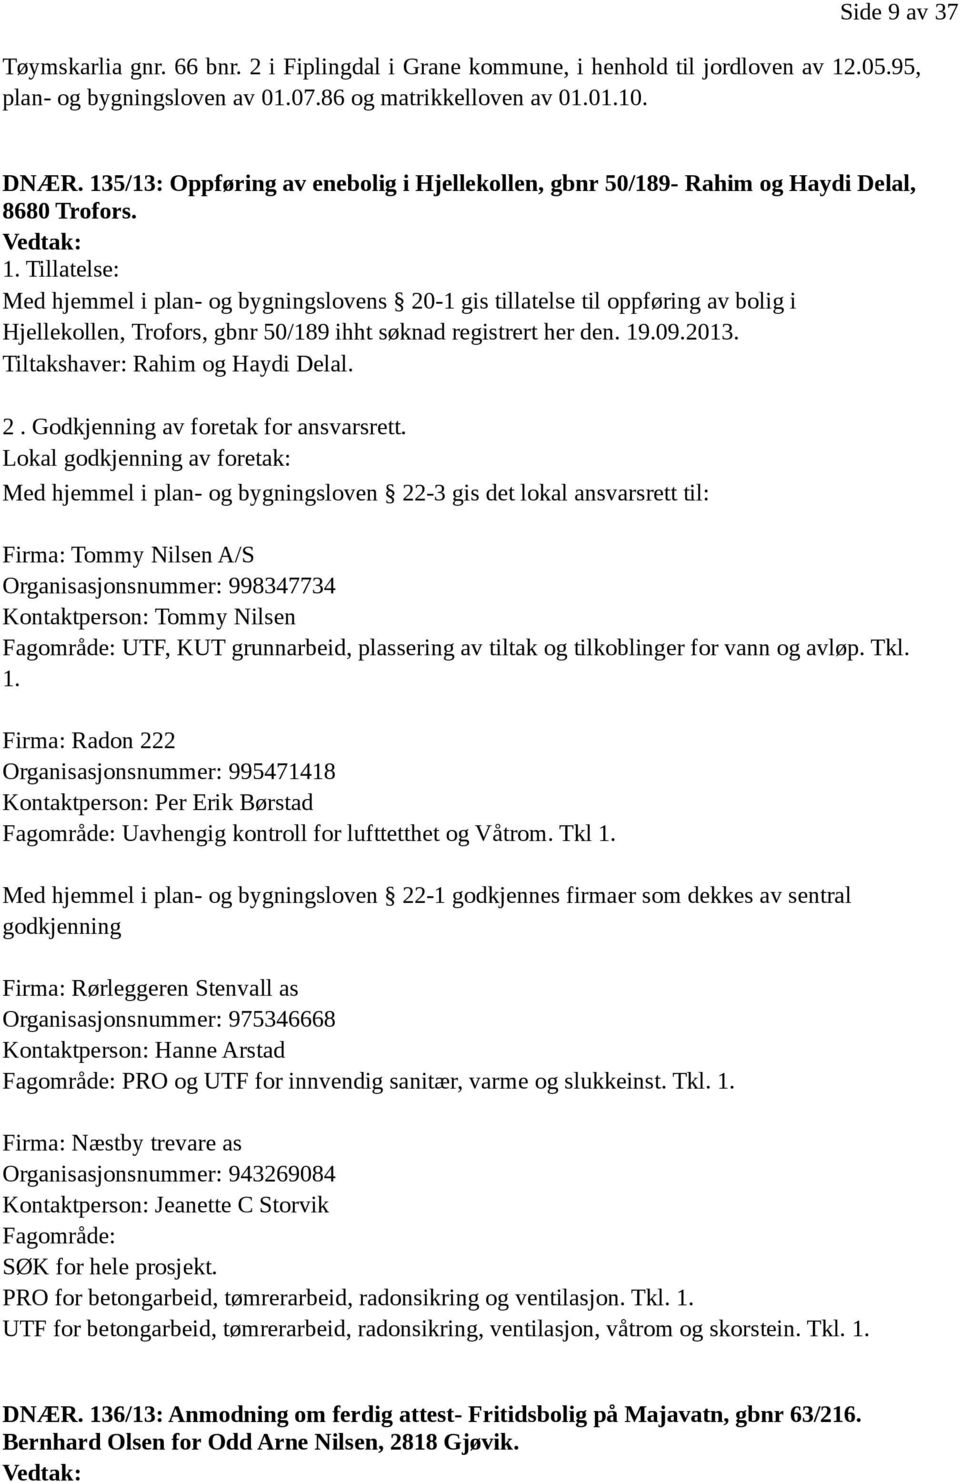 Tillatelse: Med hjemmel i plan- og bygningslovens 20-1 gis tillatelse til oppføring av bolig i Hjellekollen, Trofors, gbnr 50/189 ihht søknad registrert her den. 19.09.2013.